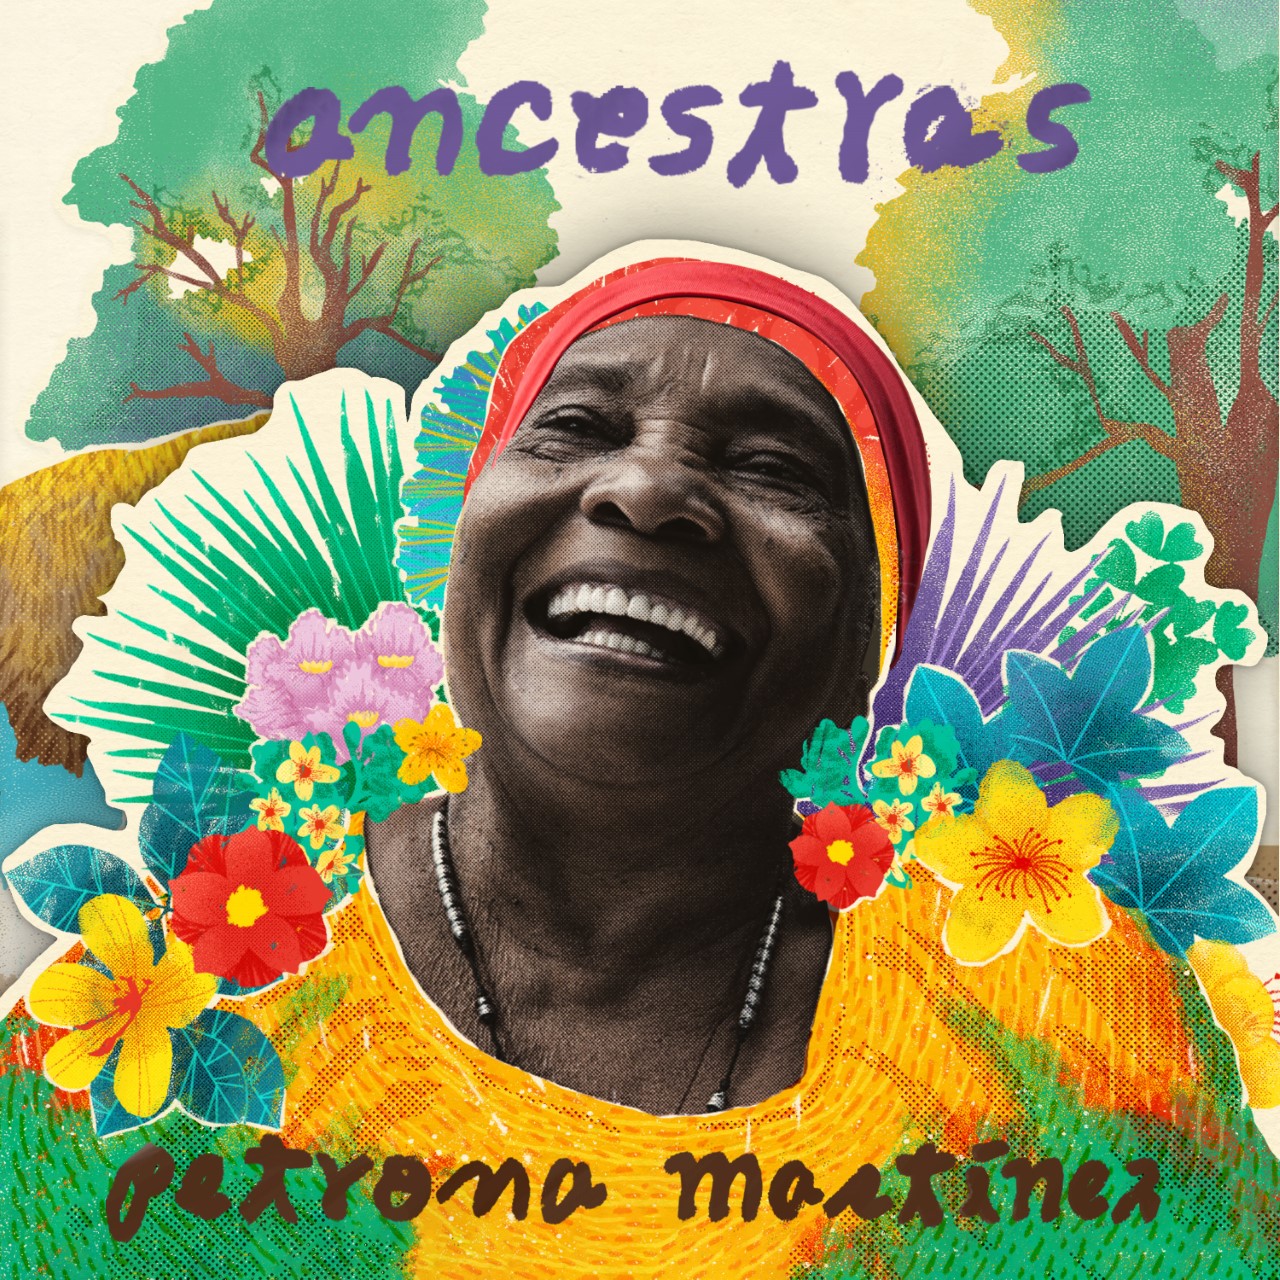 Petrona Martínez y su disco “Ancestras” nominados al Latin Grammy 2021, como mejor álbum Folclórico